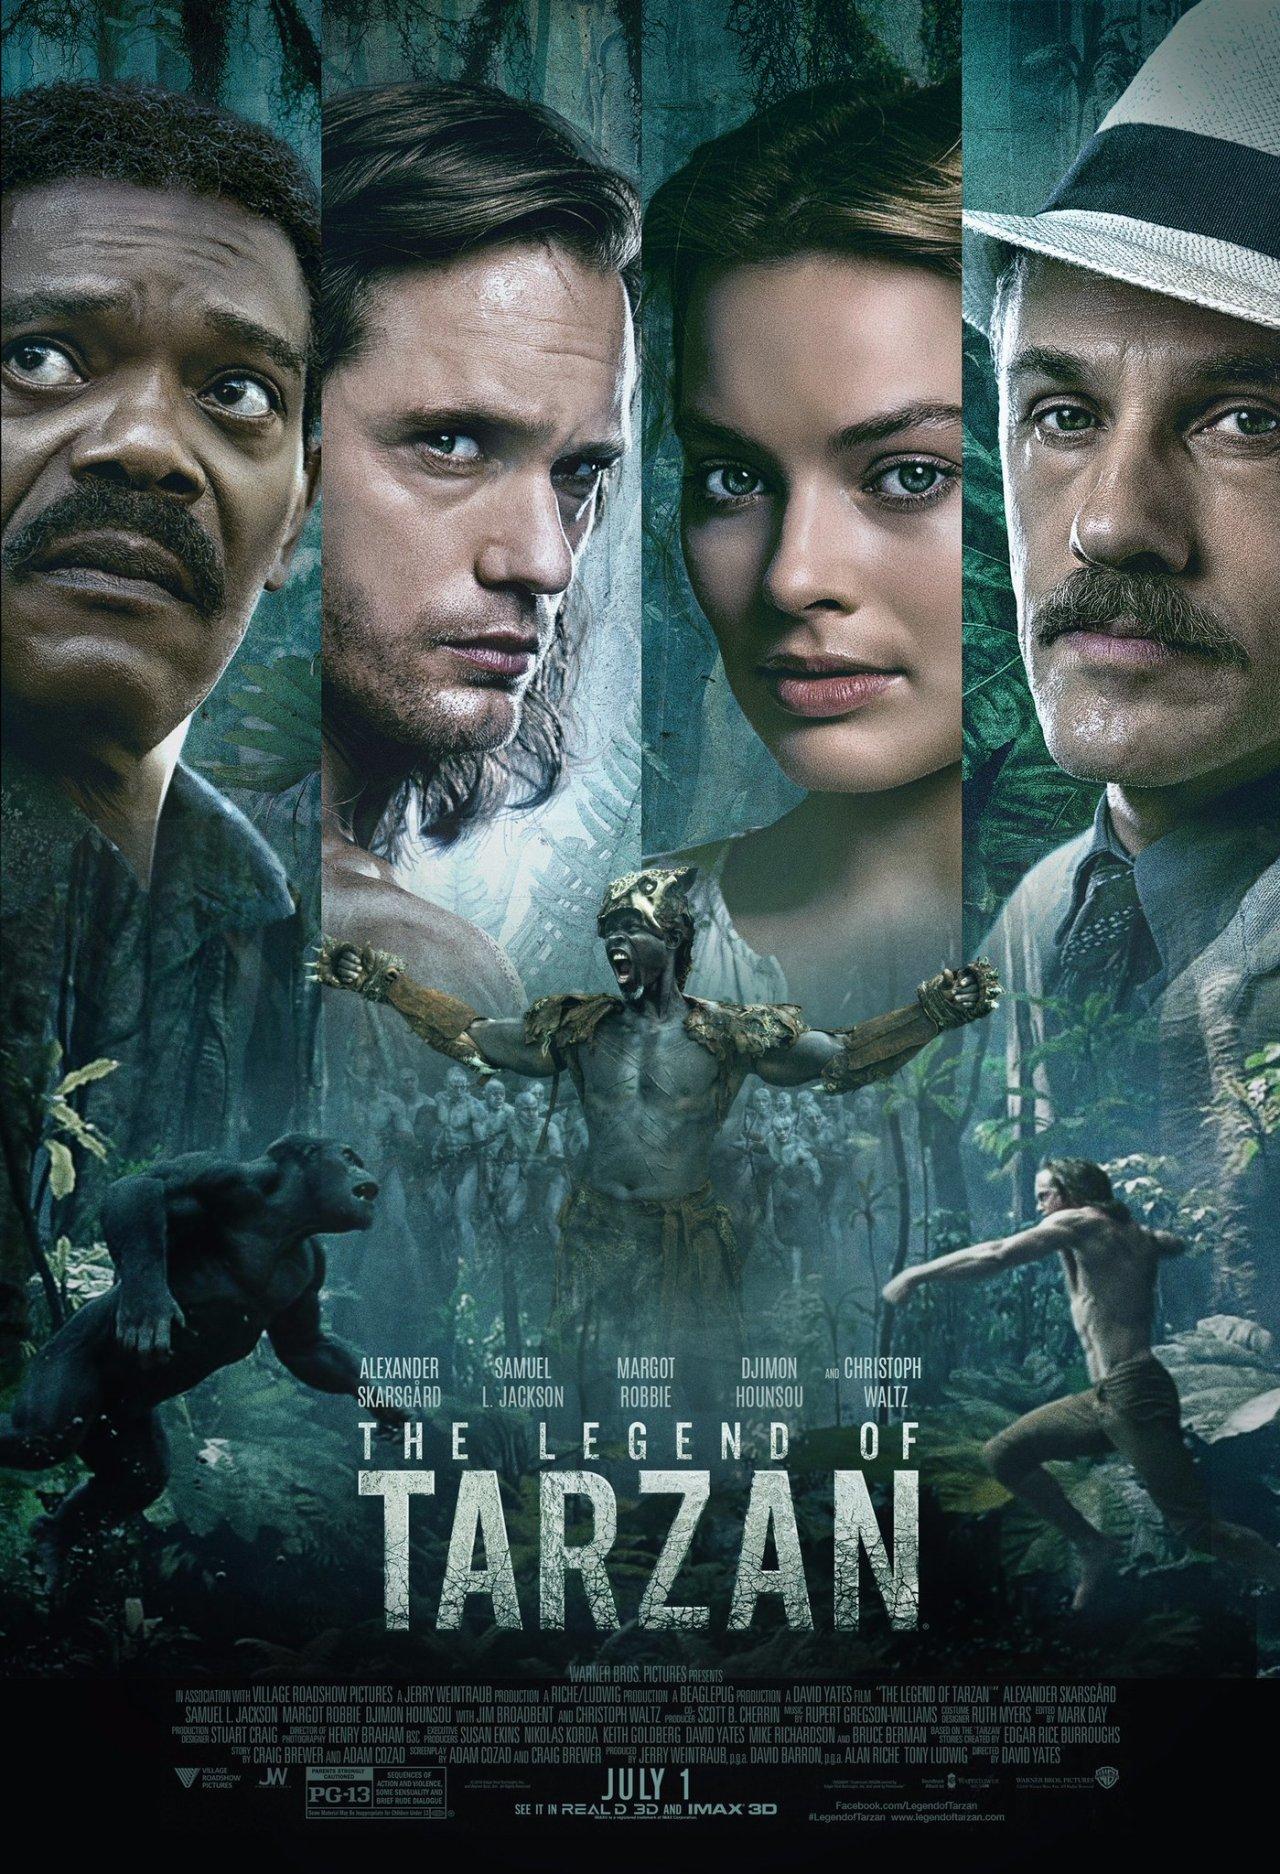  دانلود فیلم تارزان The Legend of Tarzan 2016